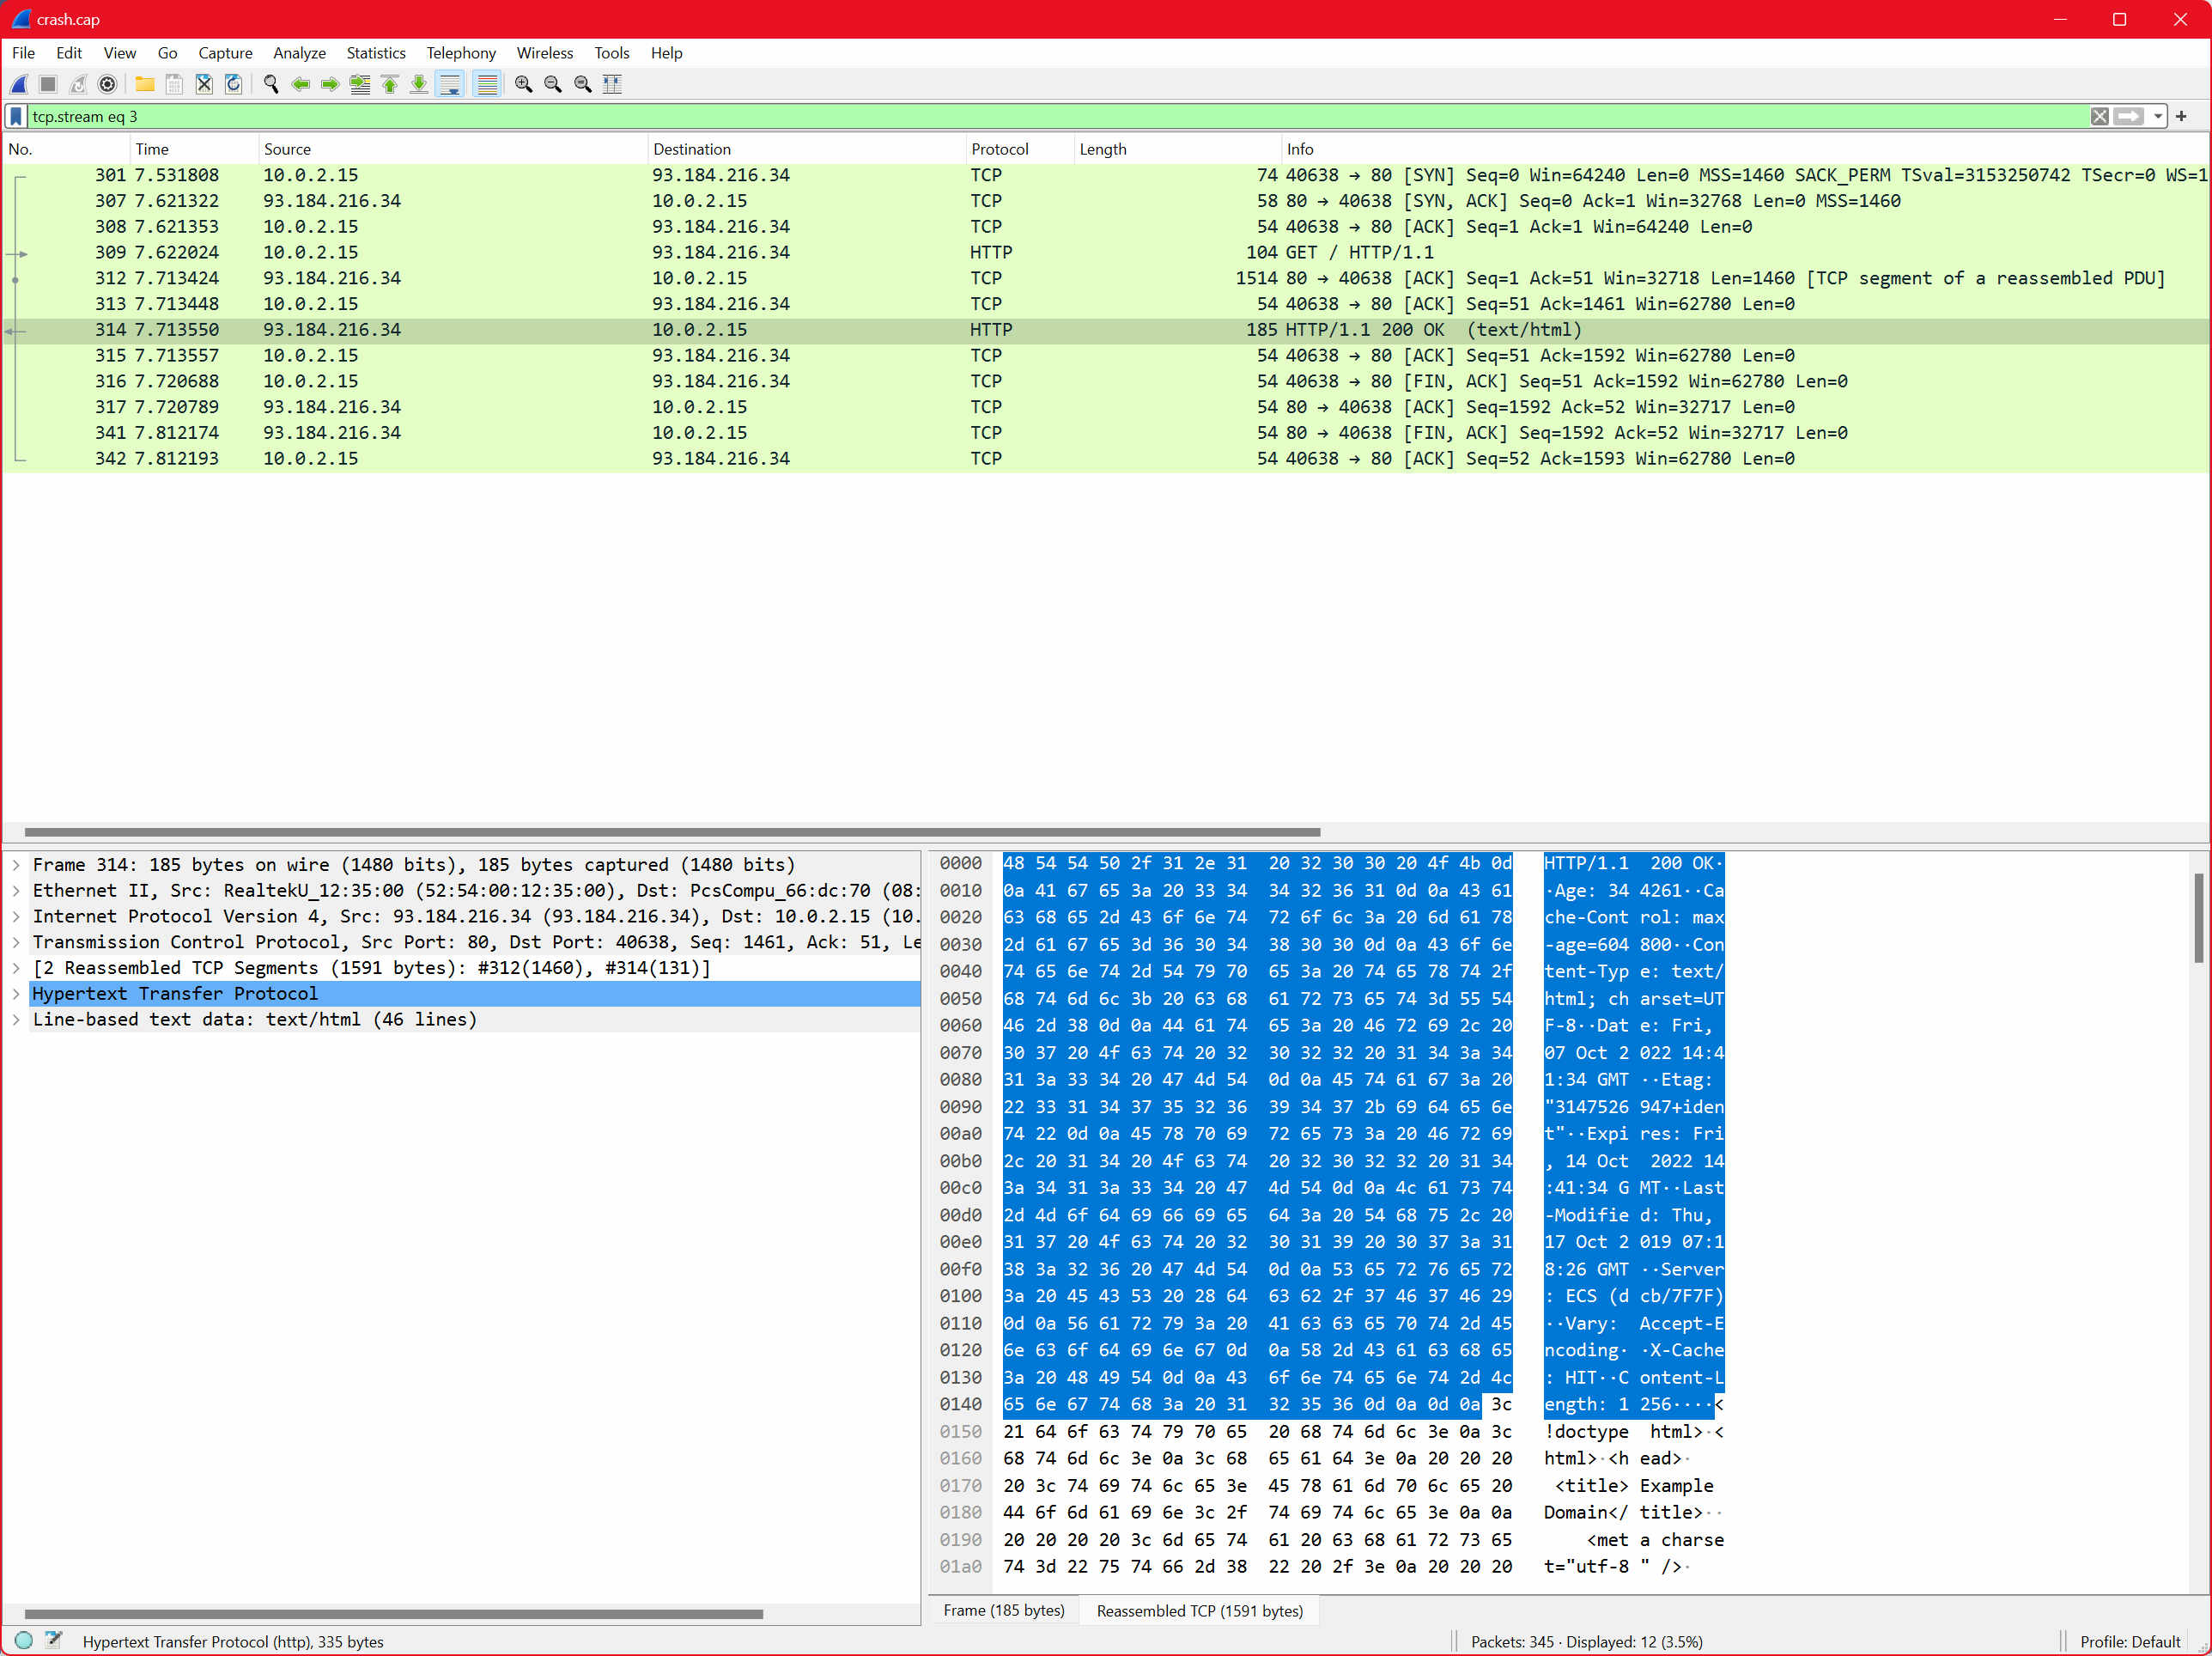 Wireshark capture showing a plaintext HTTP request